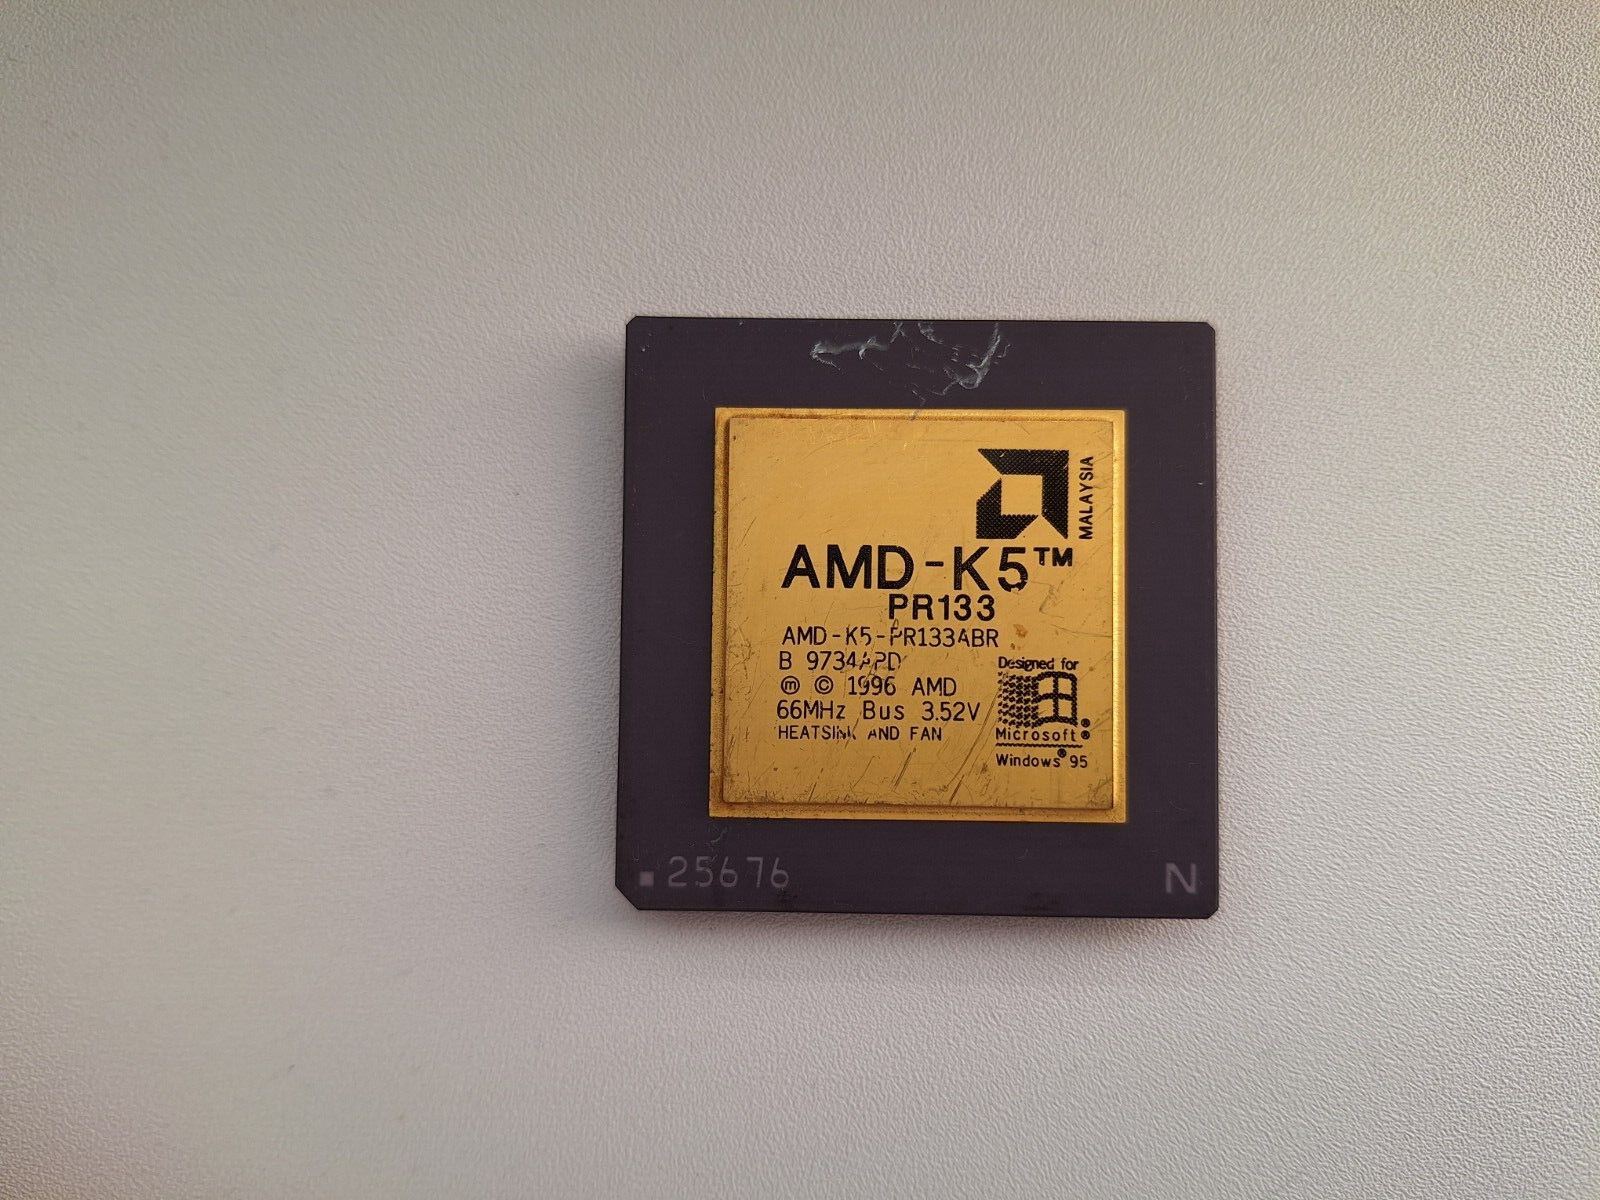 AMD K5 PR133 AMD-K5-PR133ABR vintage CPU GOLD #2